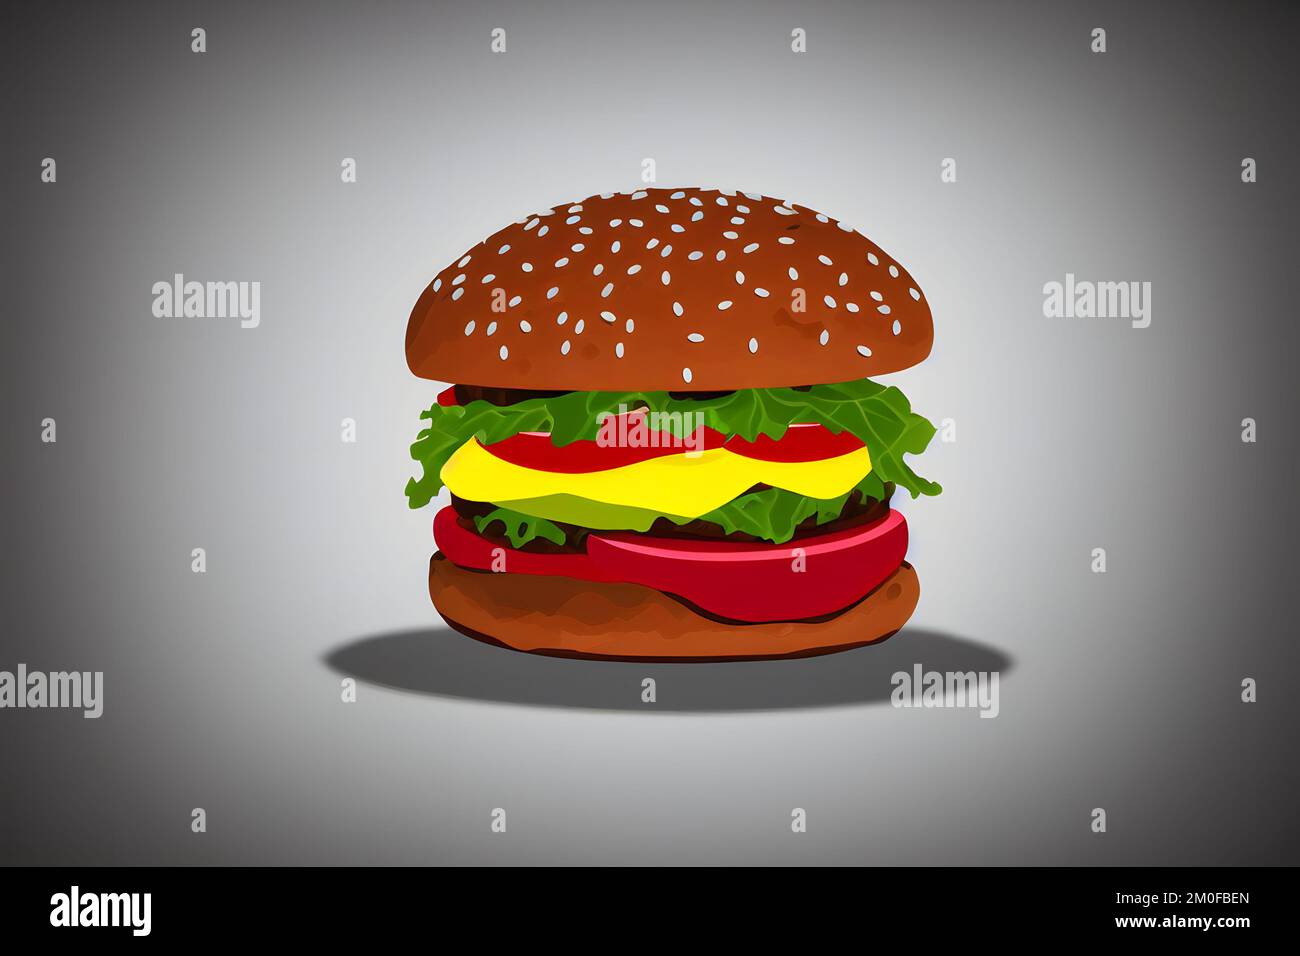 Illustrazione di hamburger in stile minimalista, un classico fast food Foto Stock